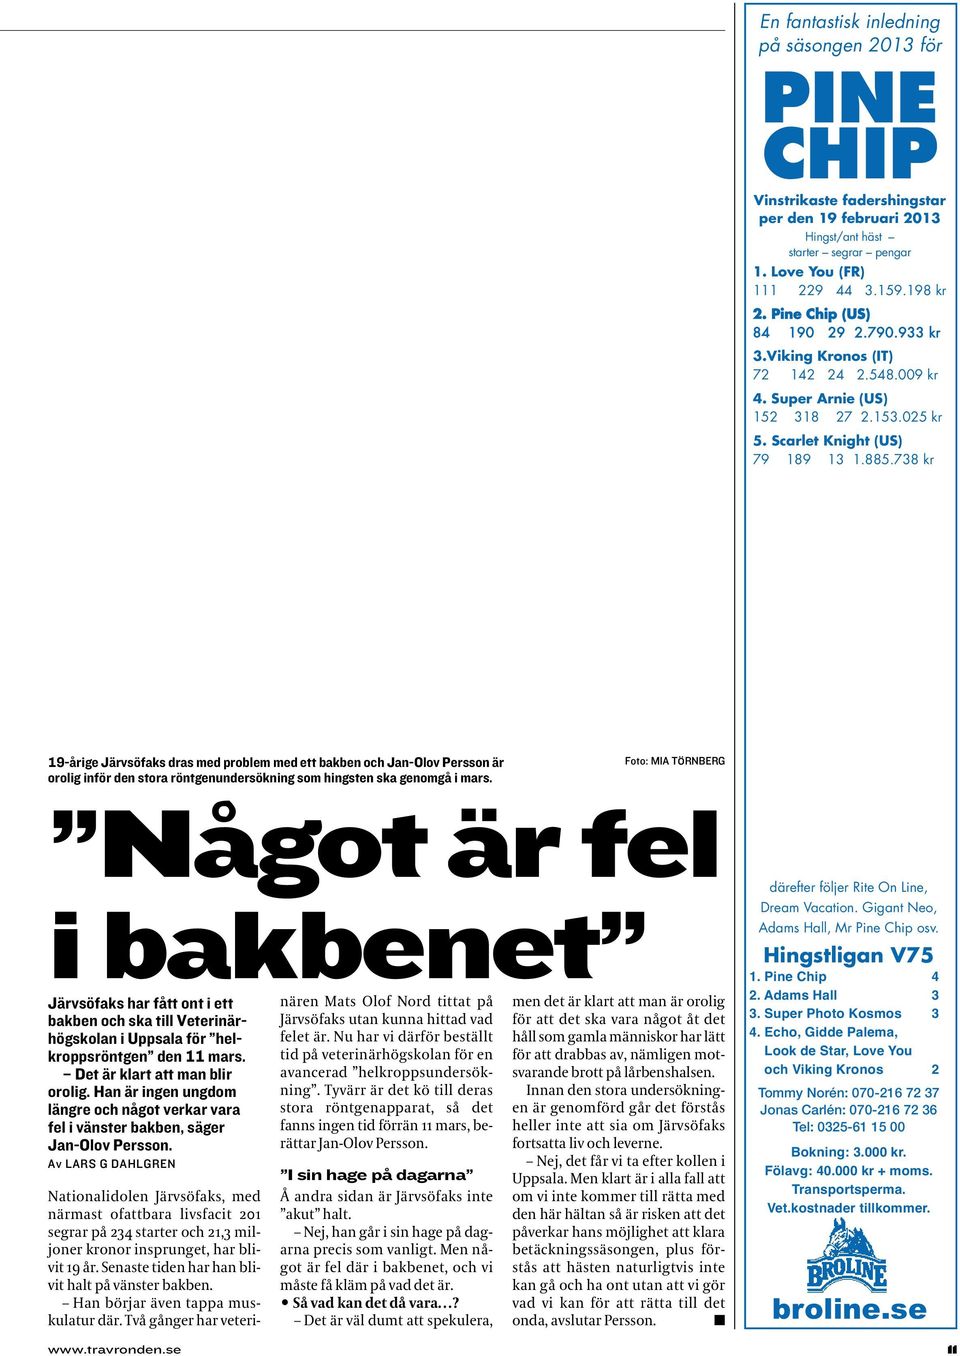 738 kr 19-årige Järvsöfaks dras med problem med ett bakben och Jan-Olov Persson är orolig inför den stora röntgenundersökning som hingsten ska genomgå i mars.